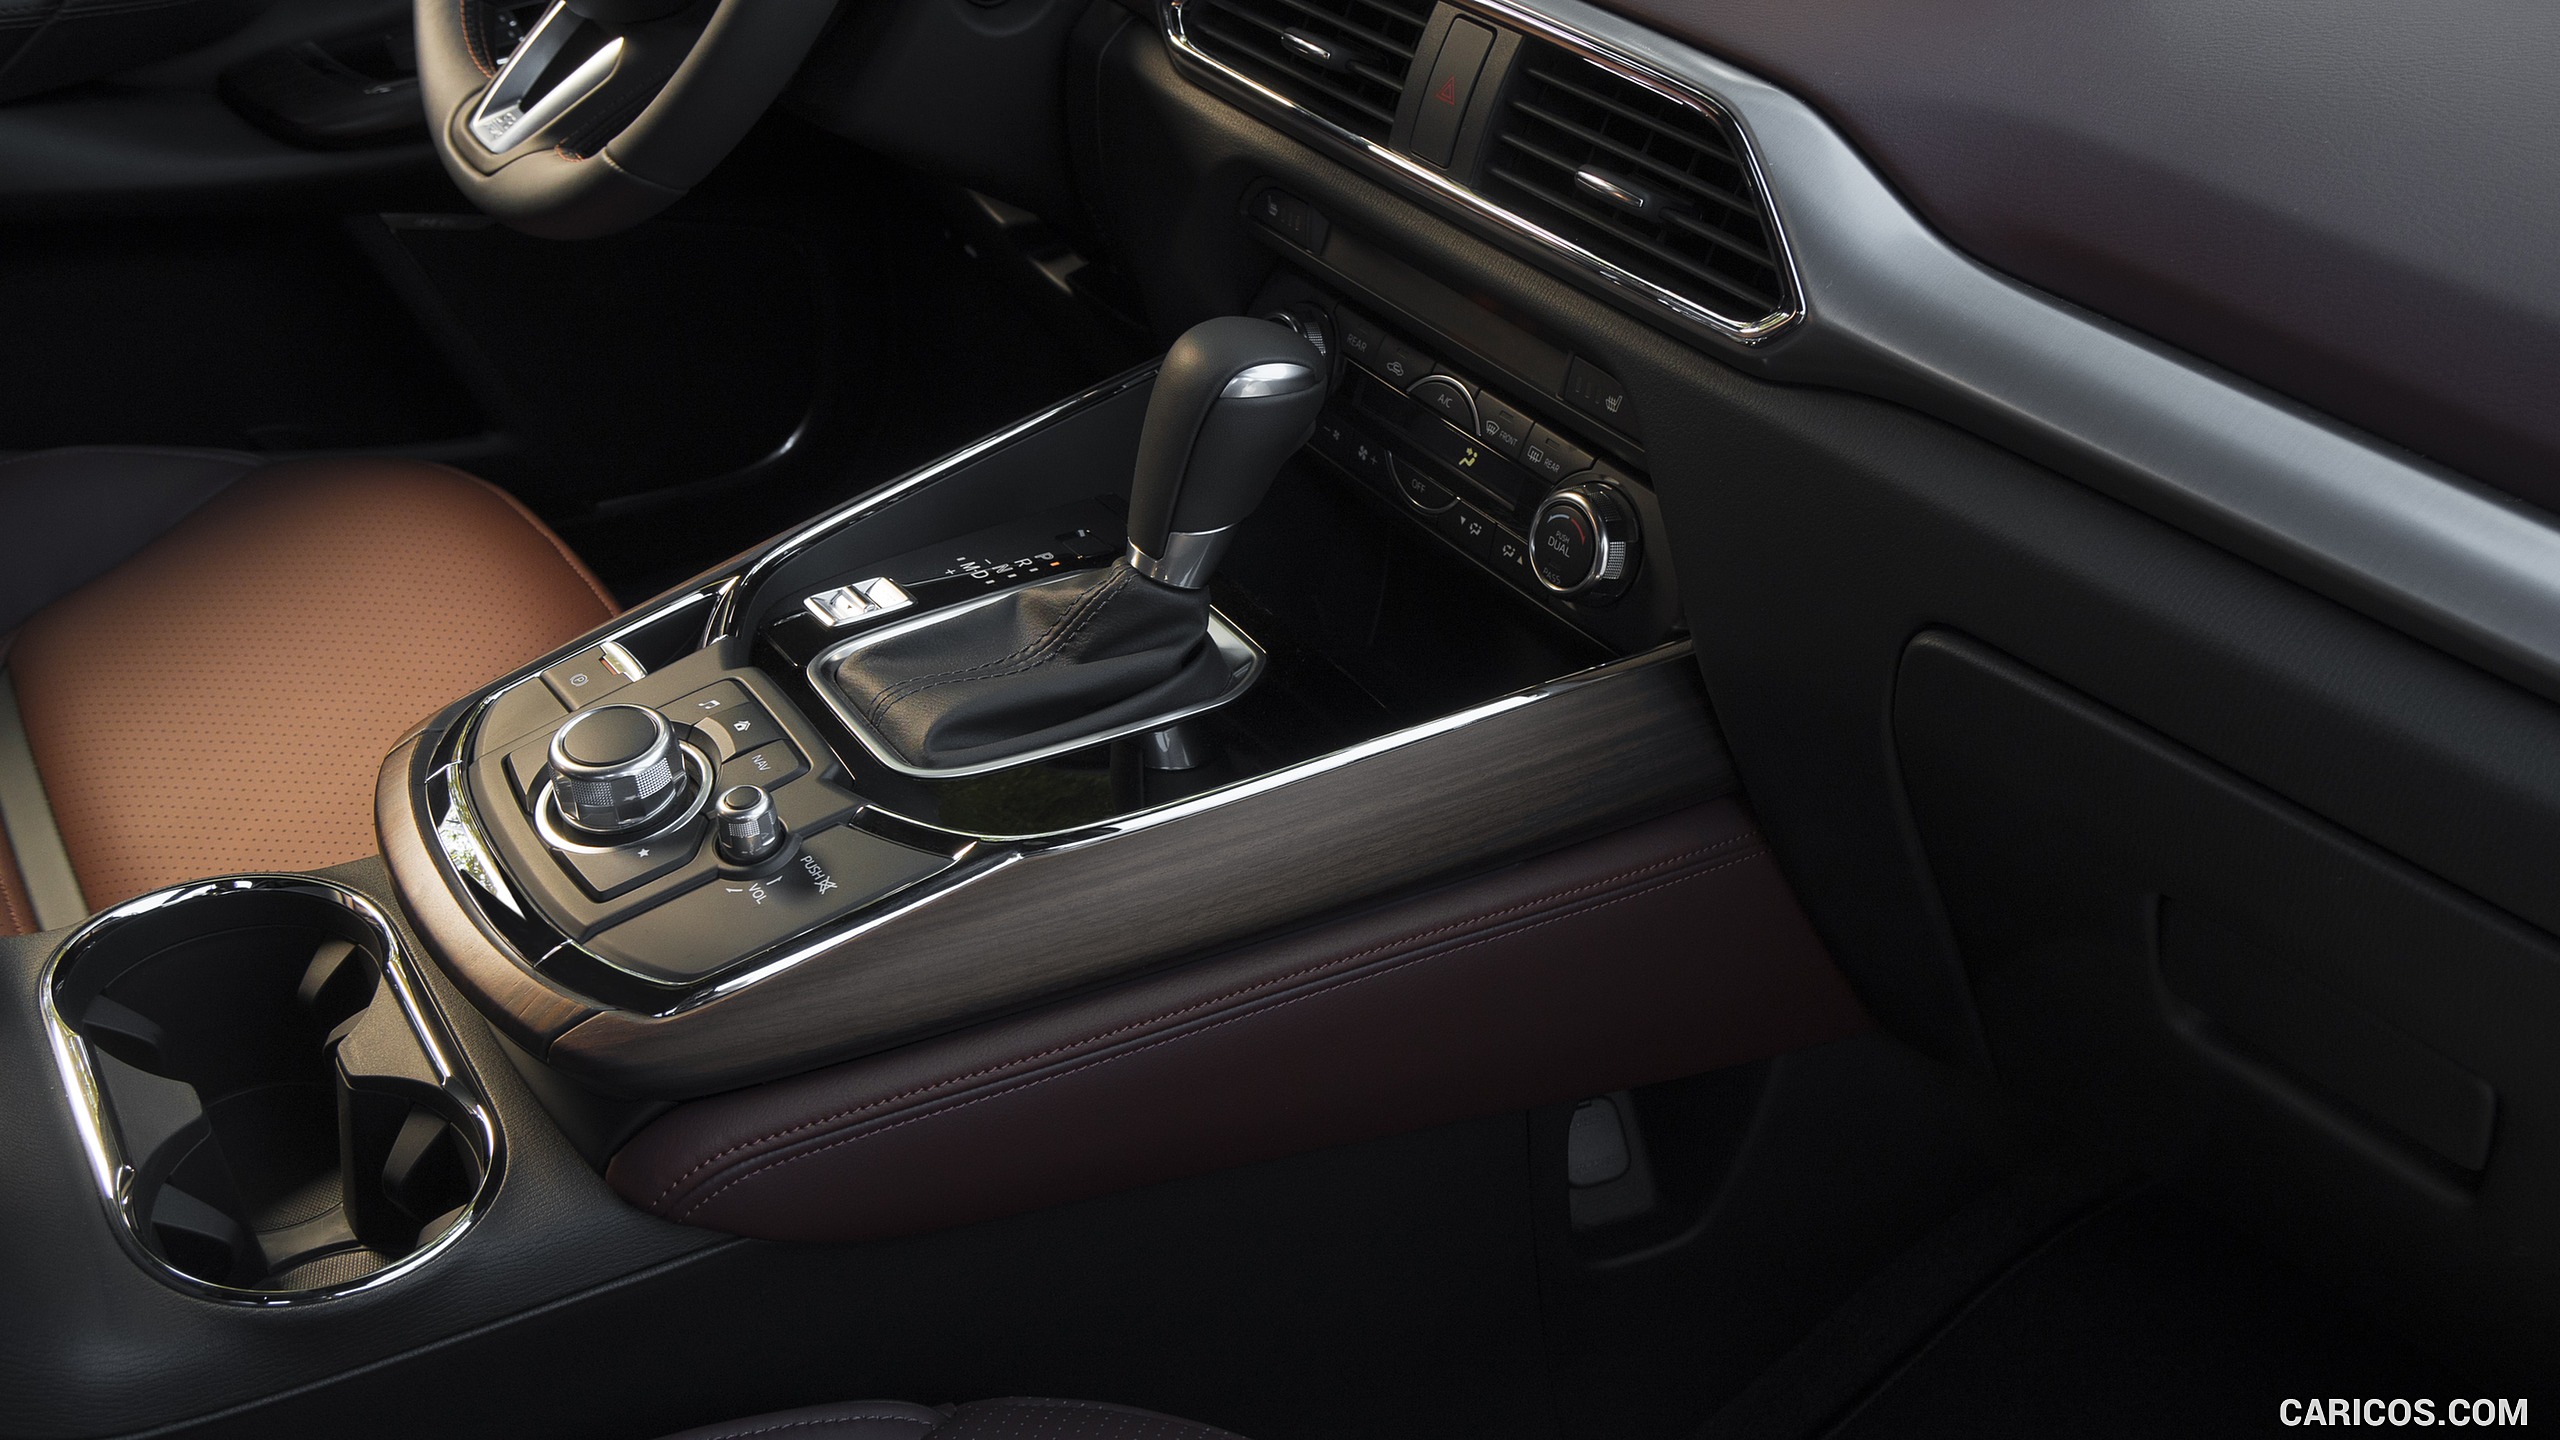 2016 Mazda CX-9 - Interior, Controls, #17 of 69